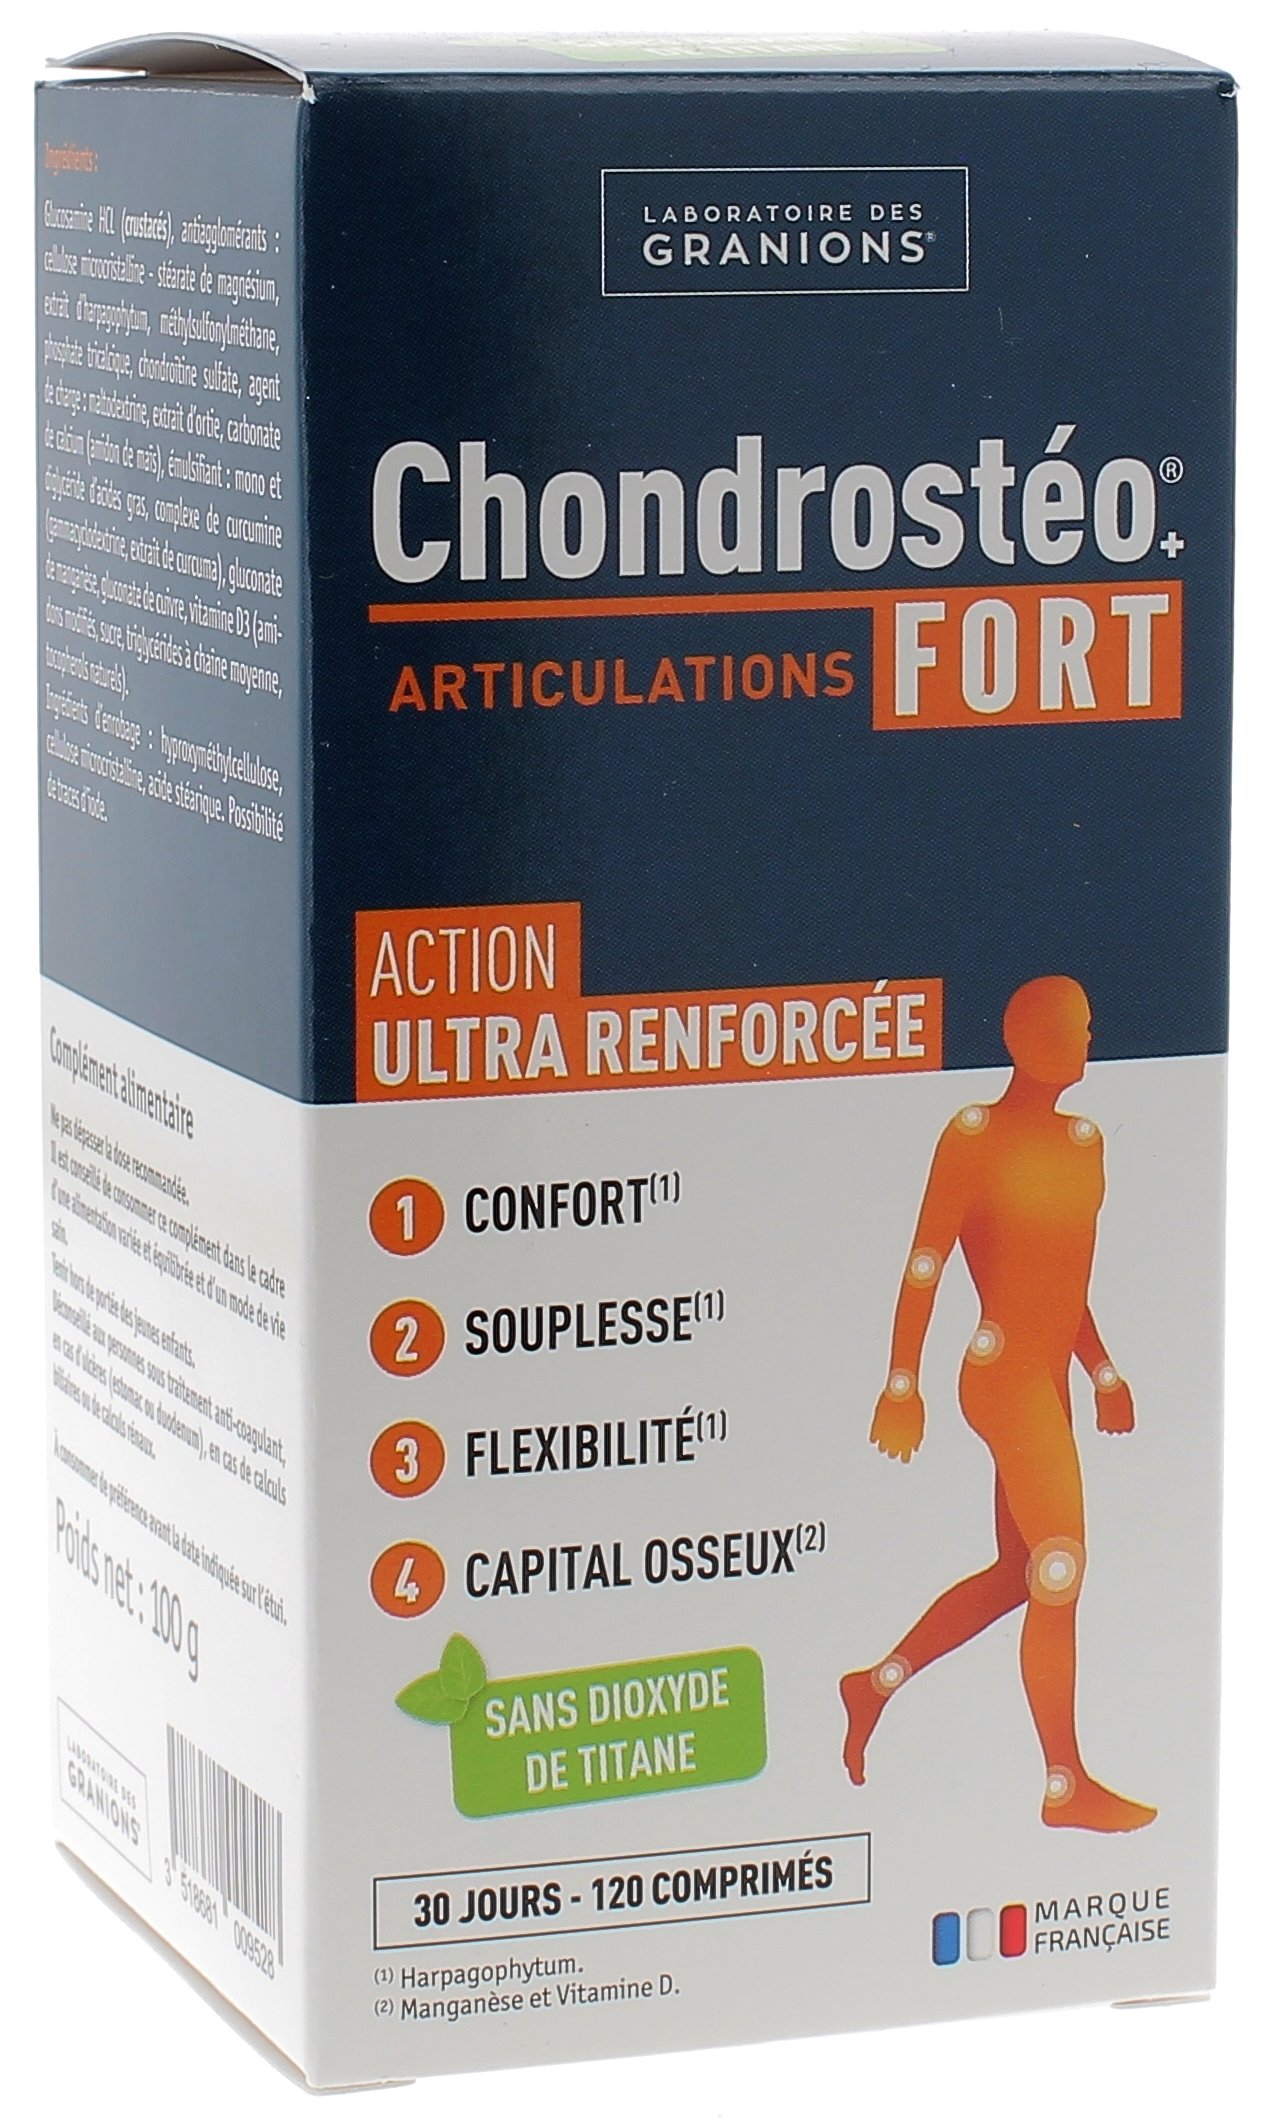 Chondrosteo+ Fort articulations Granions - boite de 120 comprimés